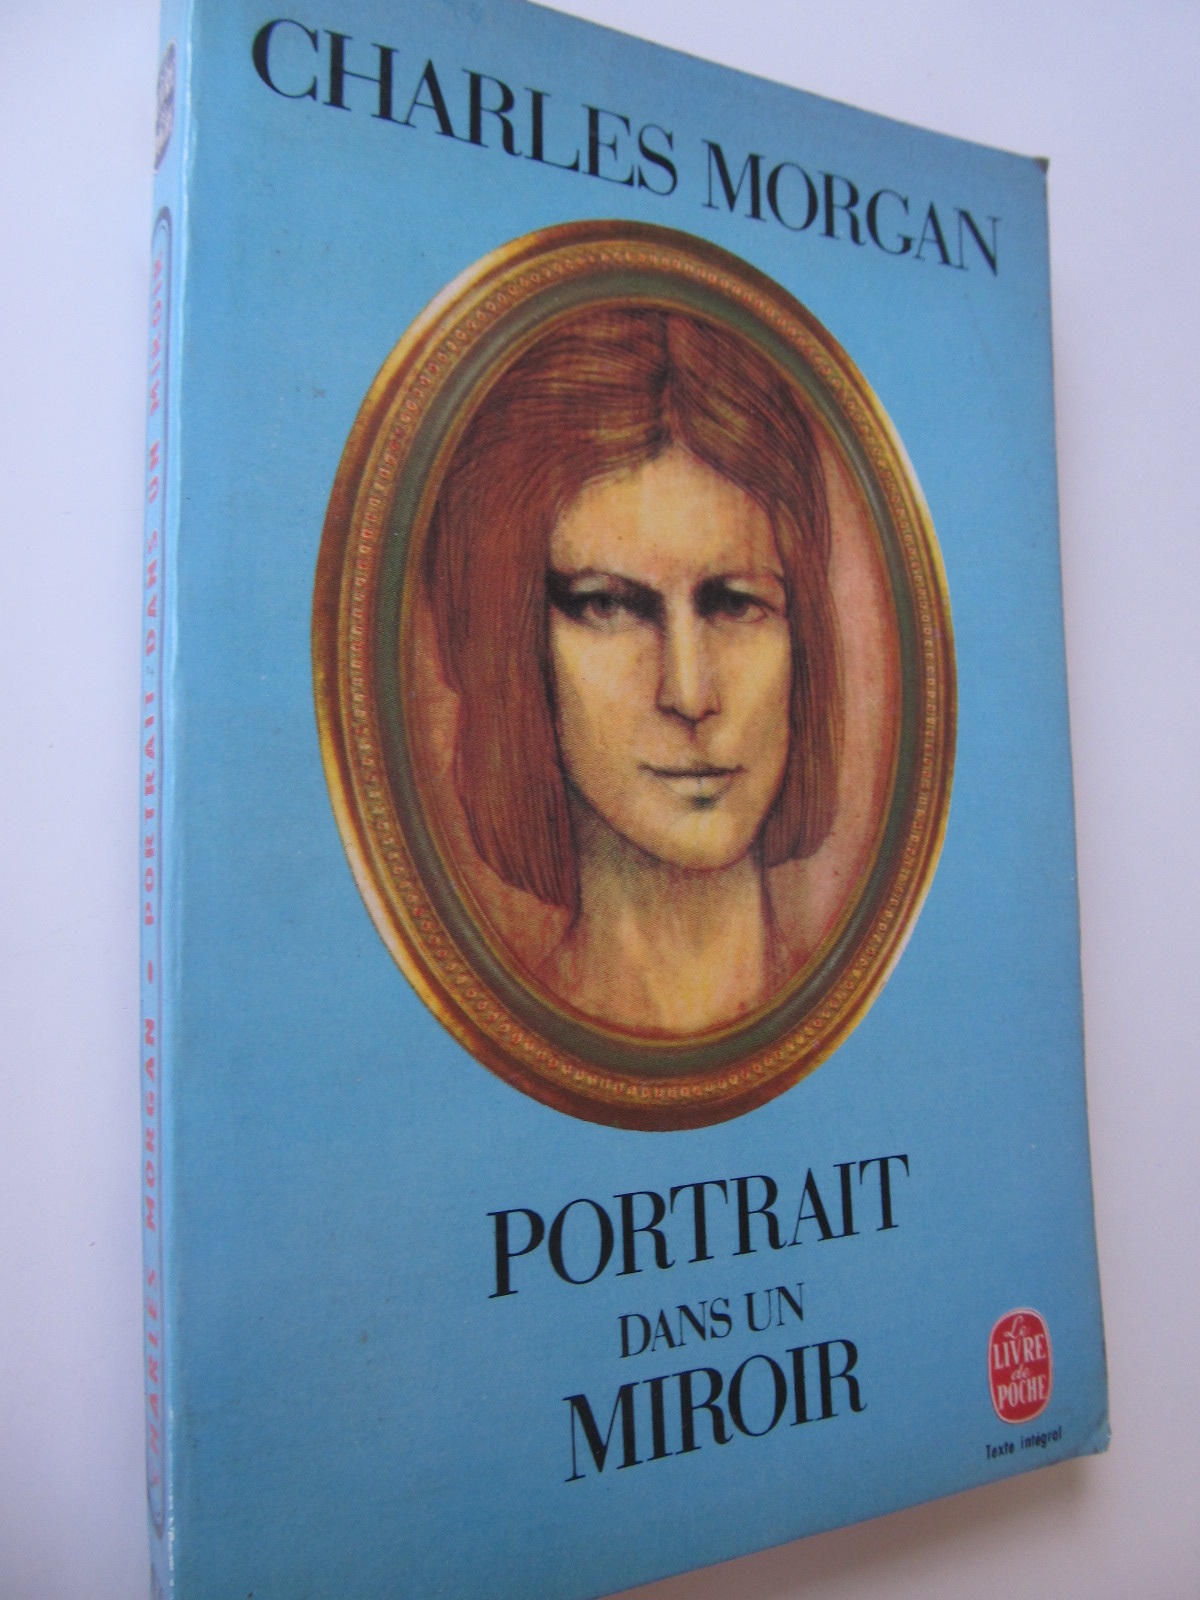 Portrait dans un miroir (Le Livre de la poche) - lb. franceza - Charles Morgan | Detalii carte